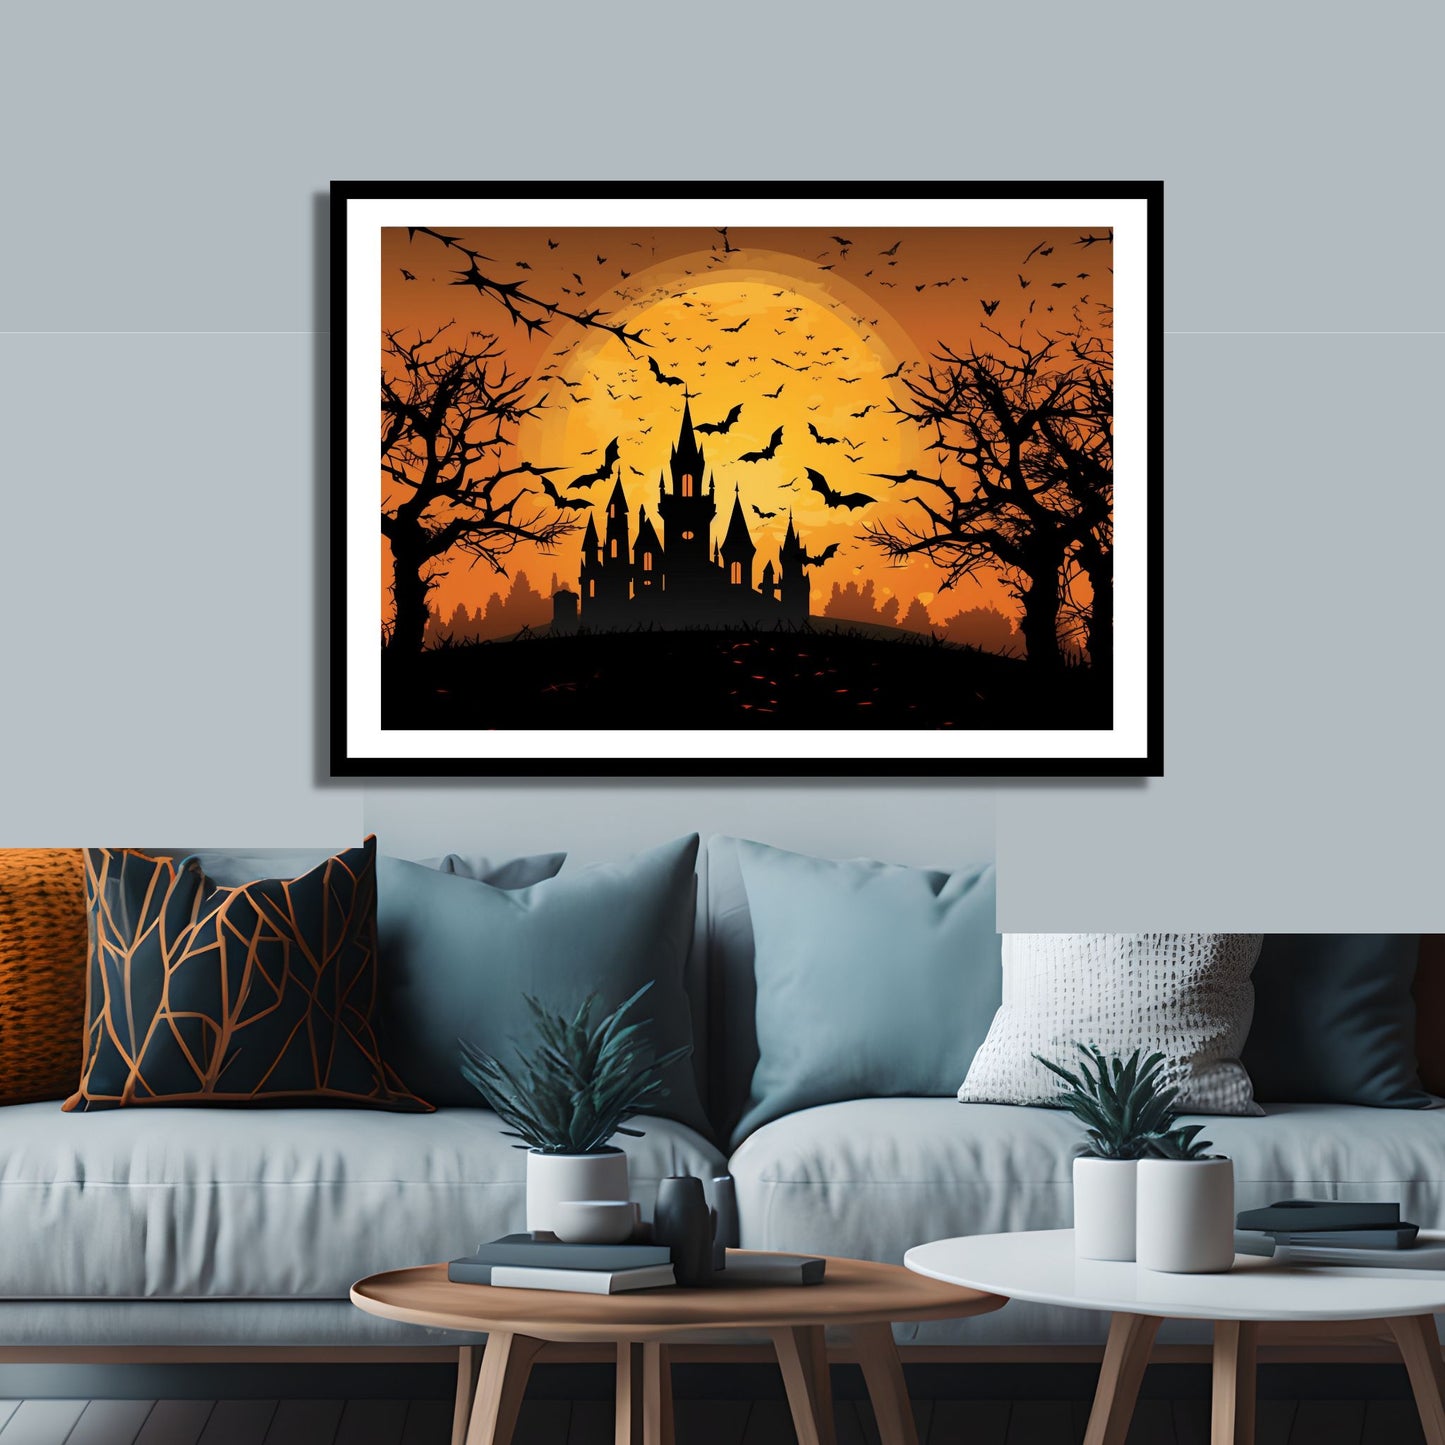 Creepy plakat med motiv av Halloween slott ved fullmåne. Motivet viser nattmørke med flaggermus og lys i vinduene. Bildet som har en hvit kant, er rammet inn i sort ramme og henger på en vegg over en sofa.